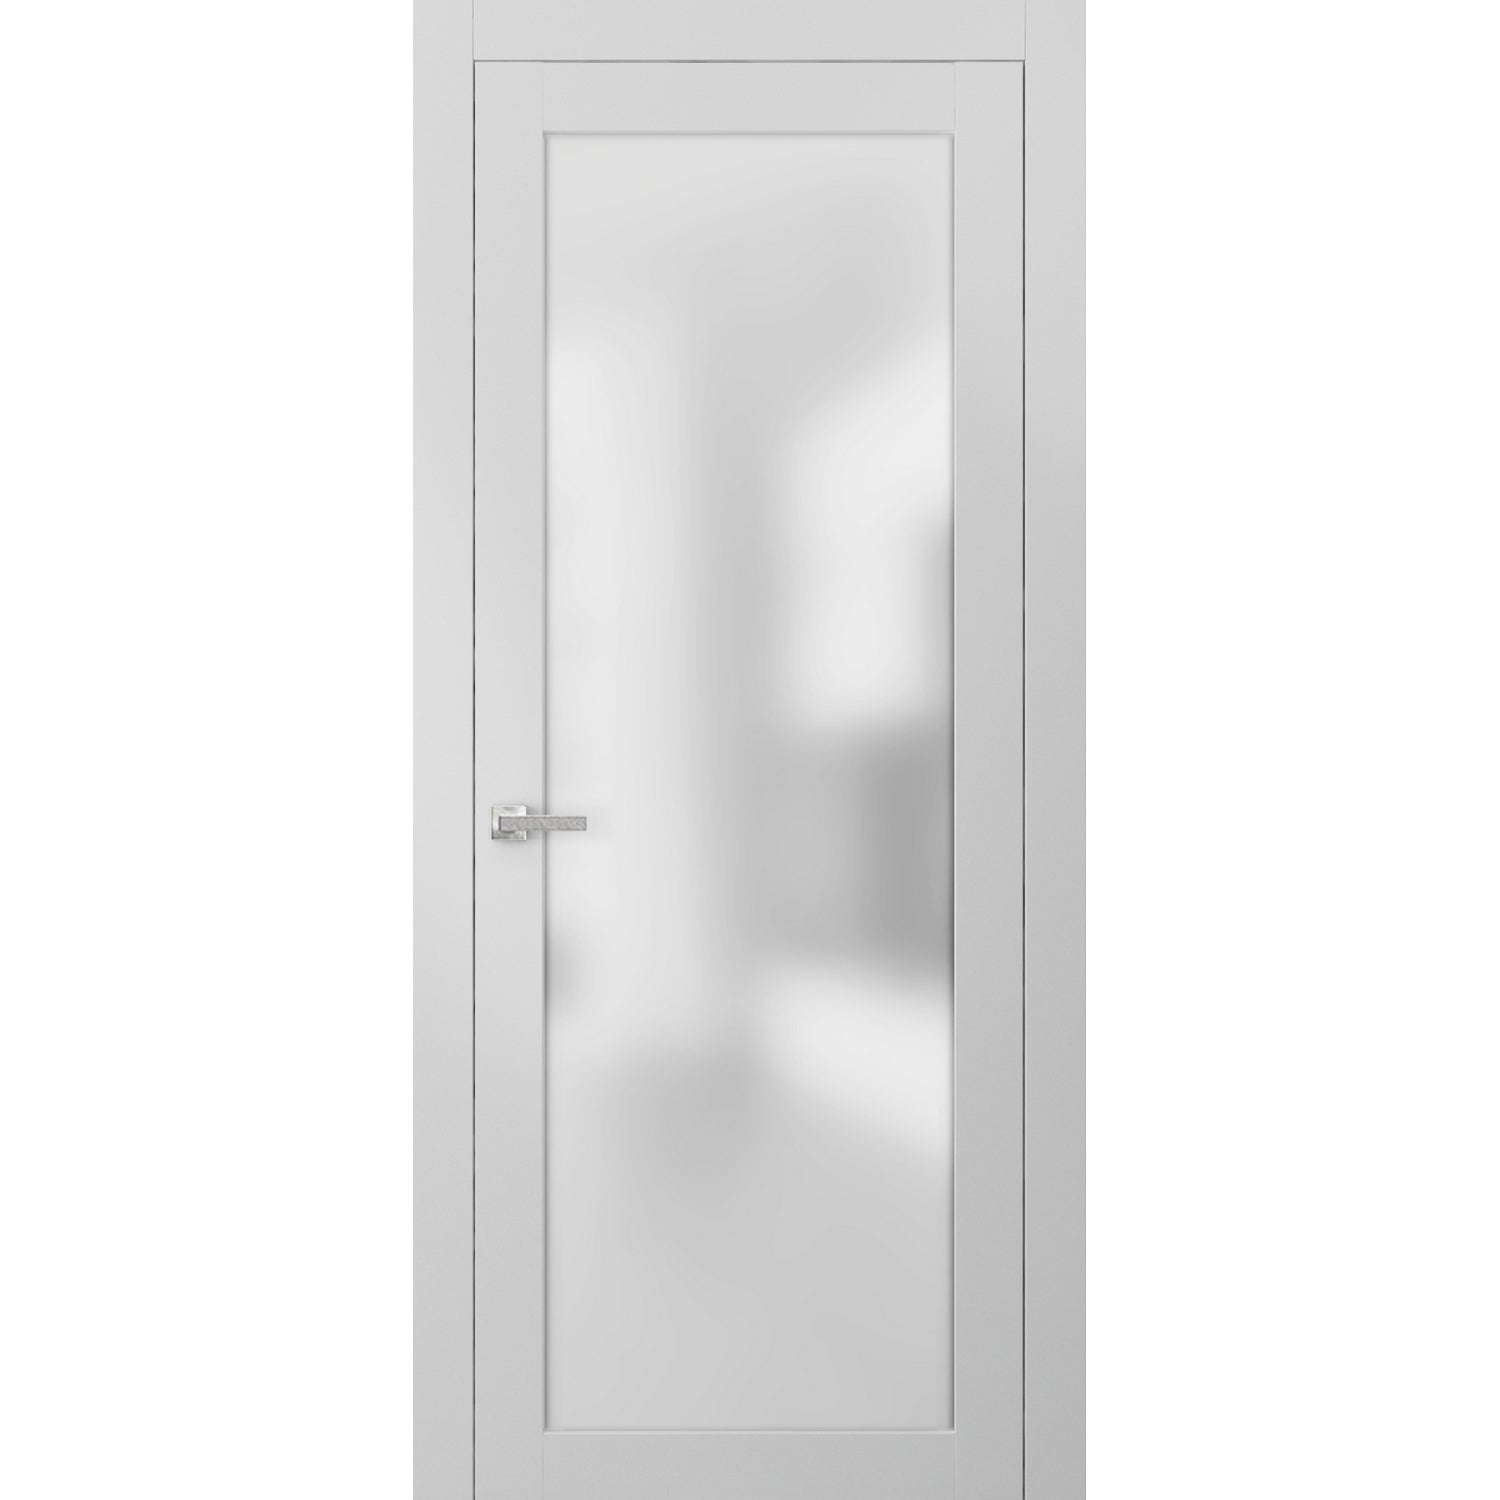 SARTODOORS Lite Frosted Glass Door 30 x 96 | Planum 2102 White Silk | Frames Satin Nickel Hardware | Glass Panel Bedroom